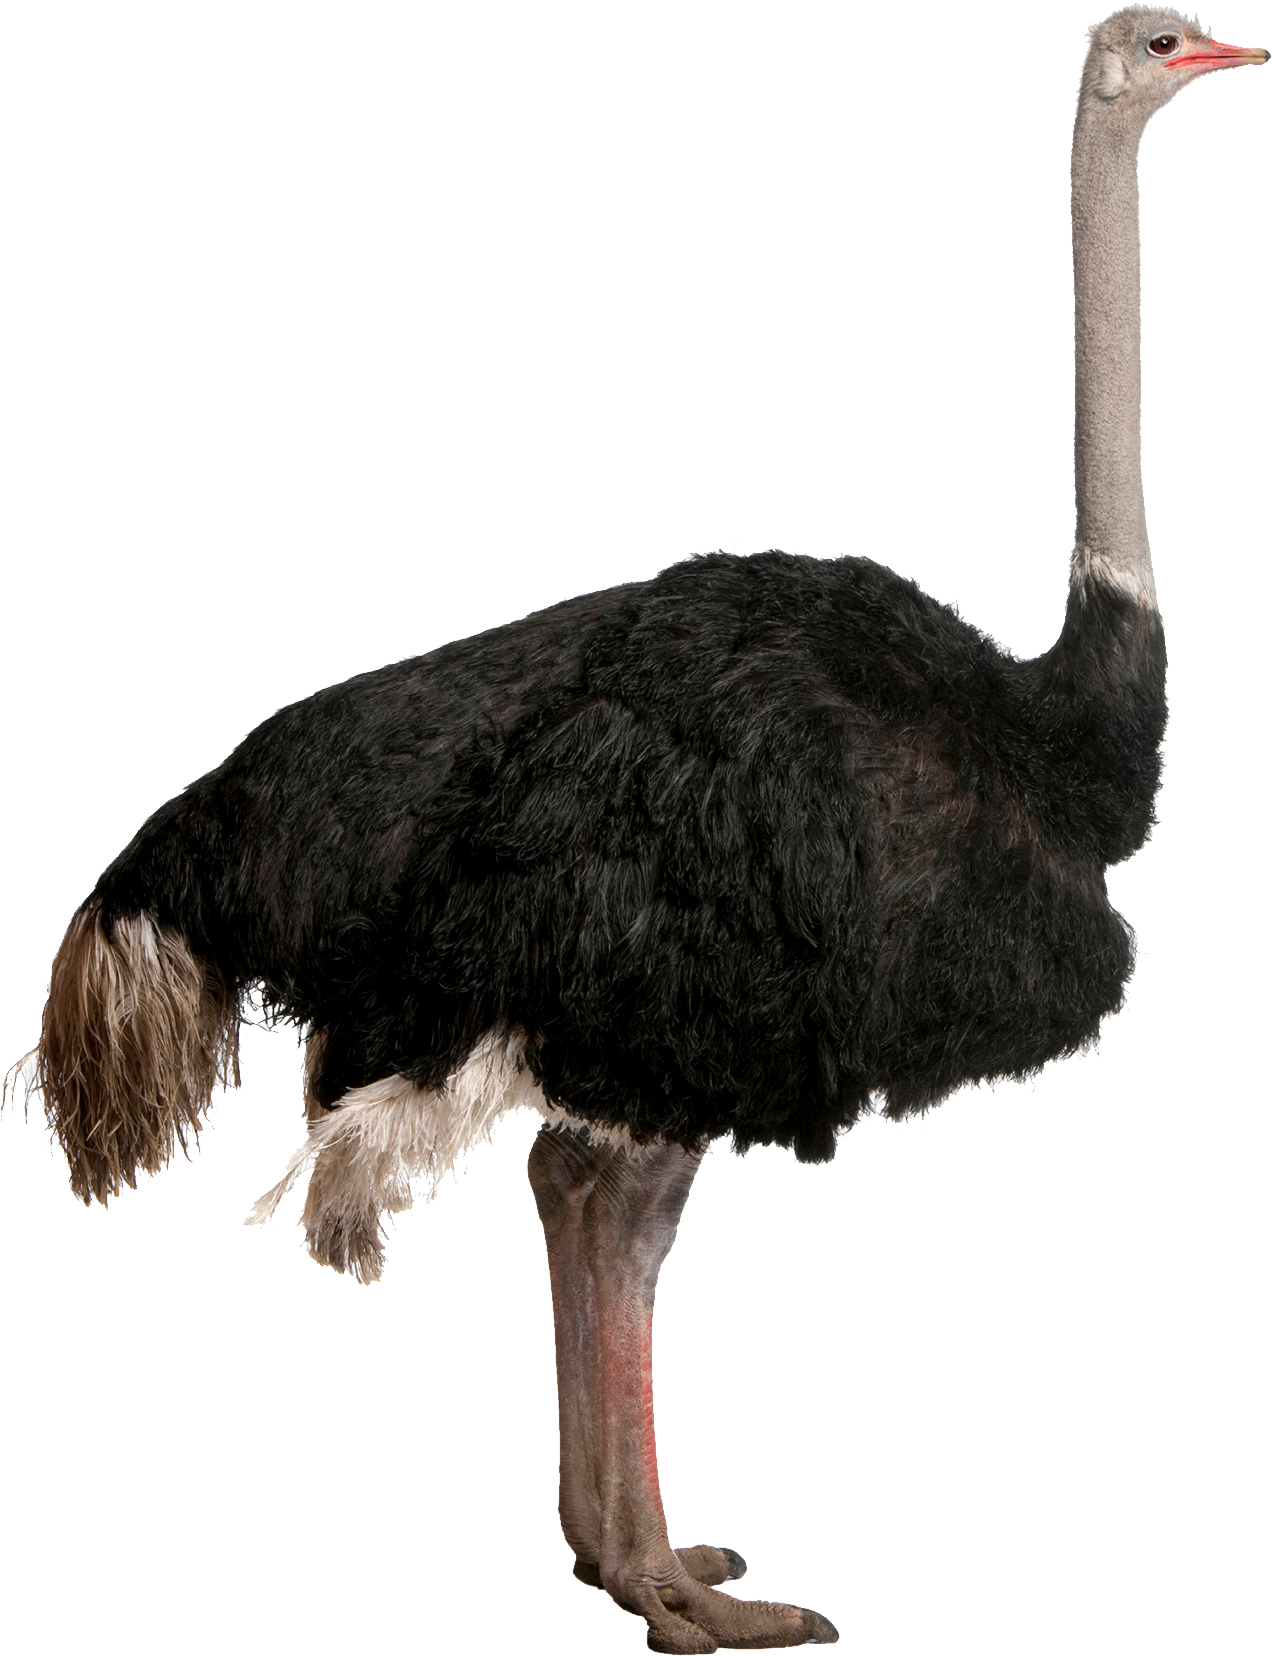 Ostrich Transparent